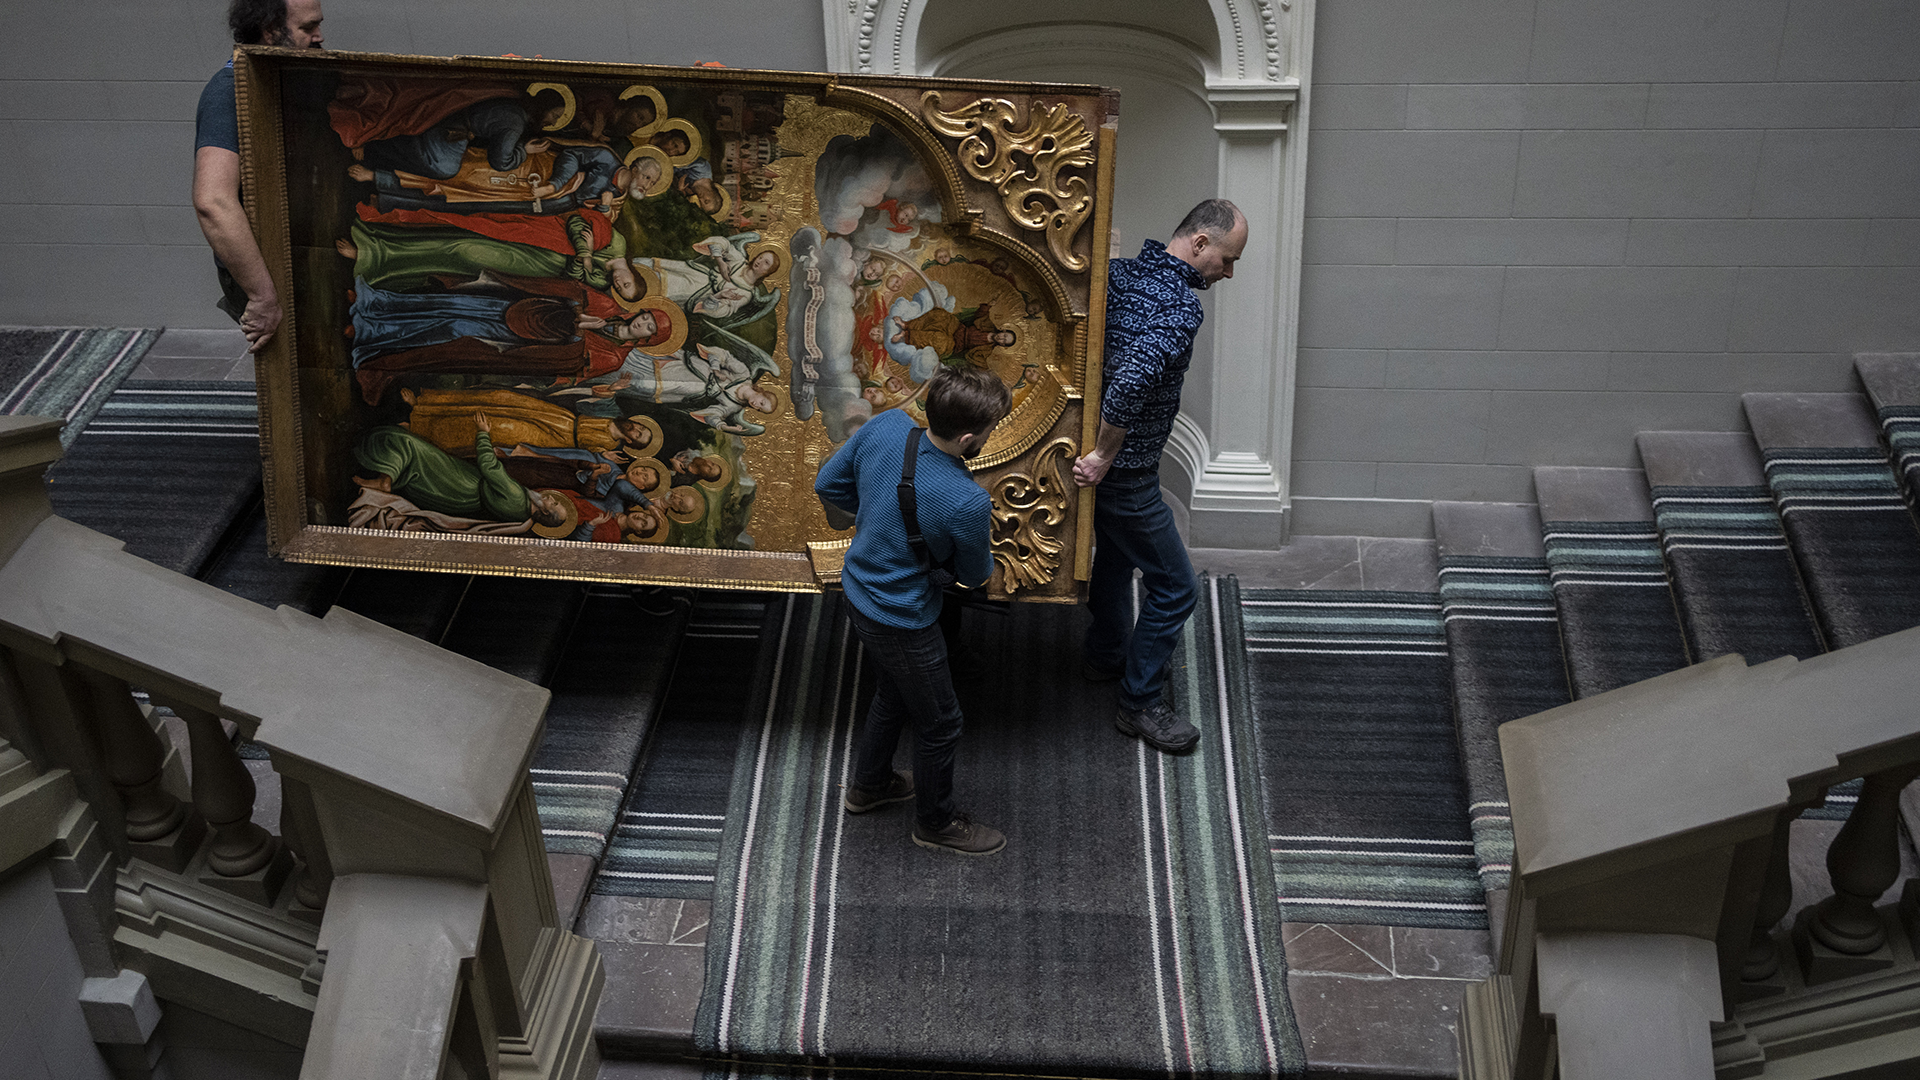 On tente de mettre à l'abri les oeuvres du plus grand musée ukrainien, dont cette pièce